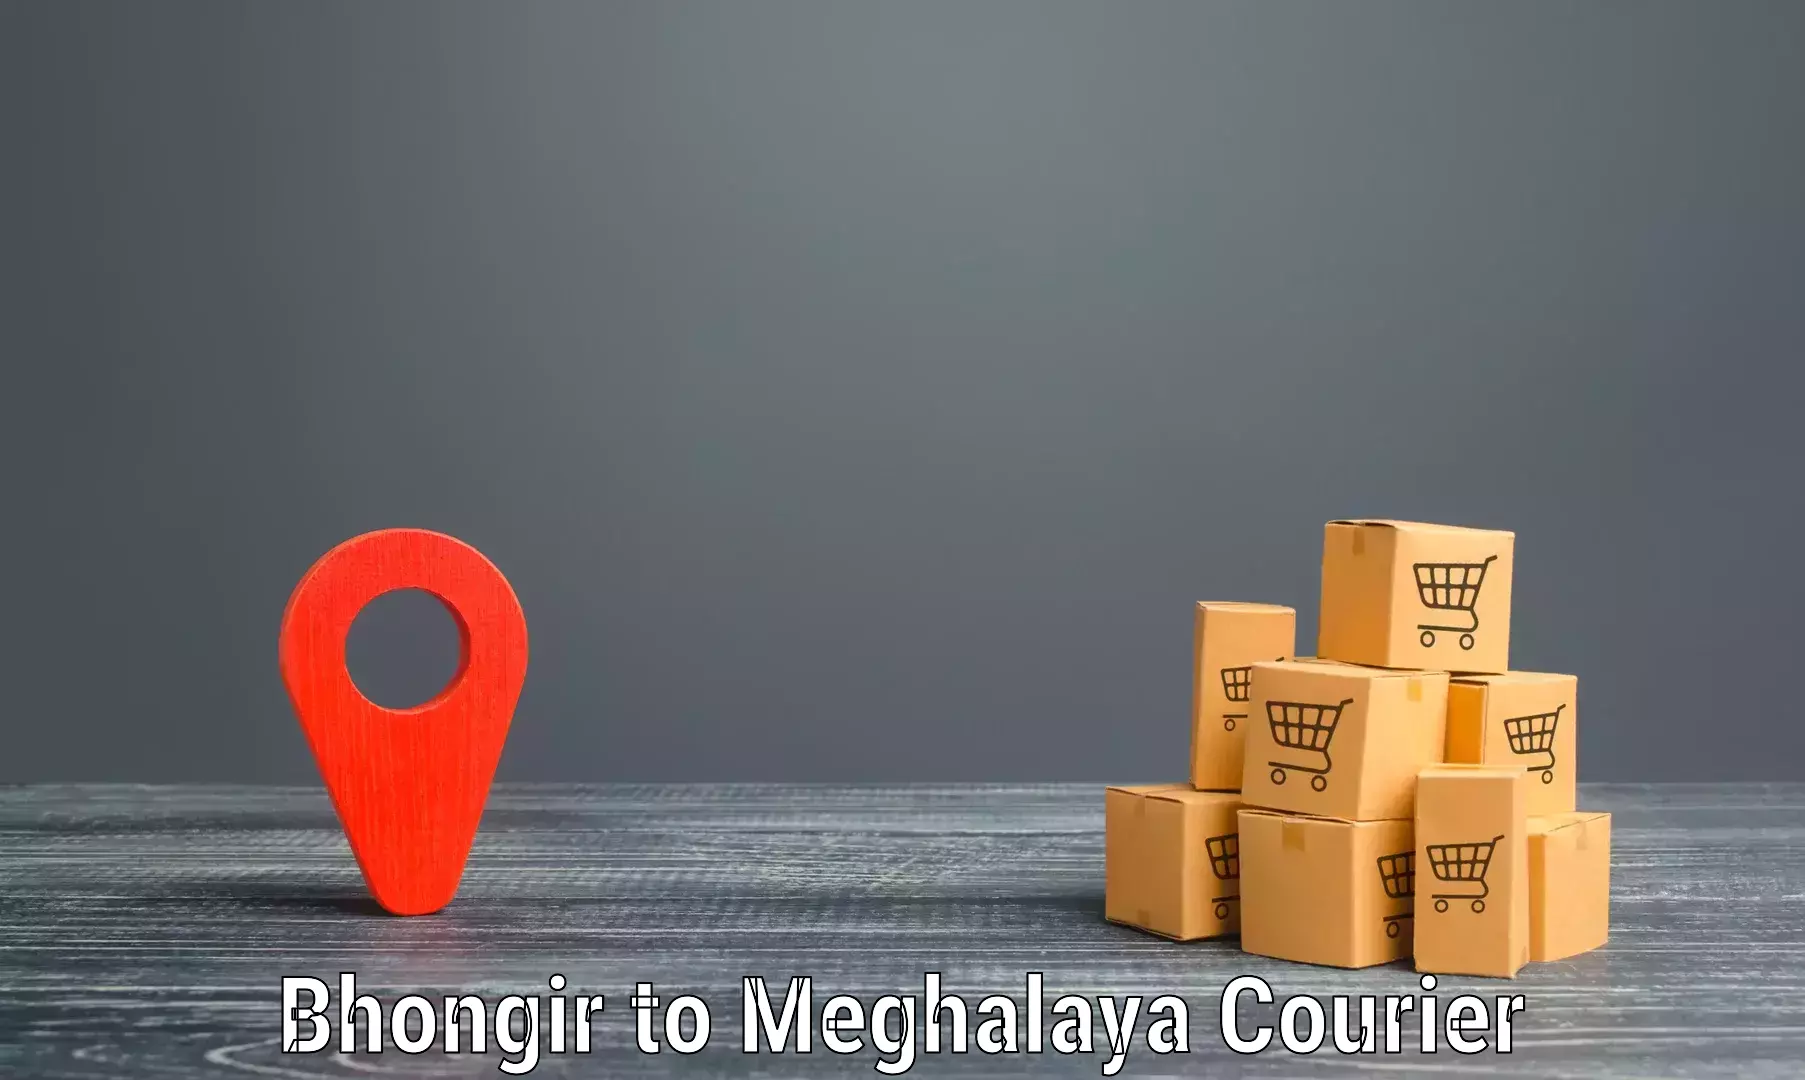 Express postal services Bhongir to Meghalaya